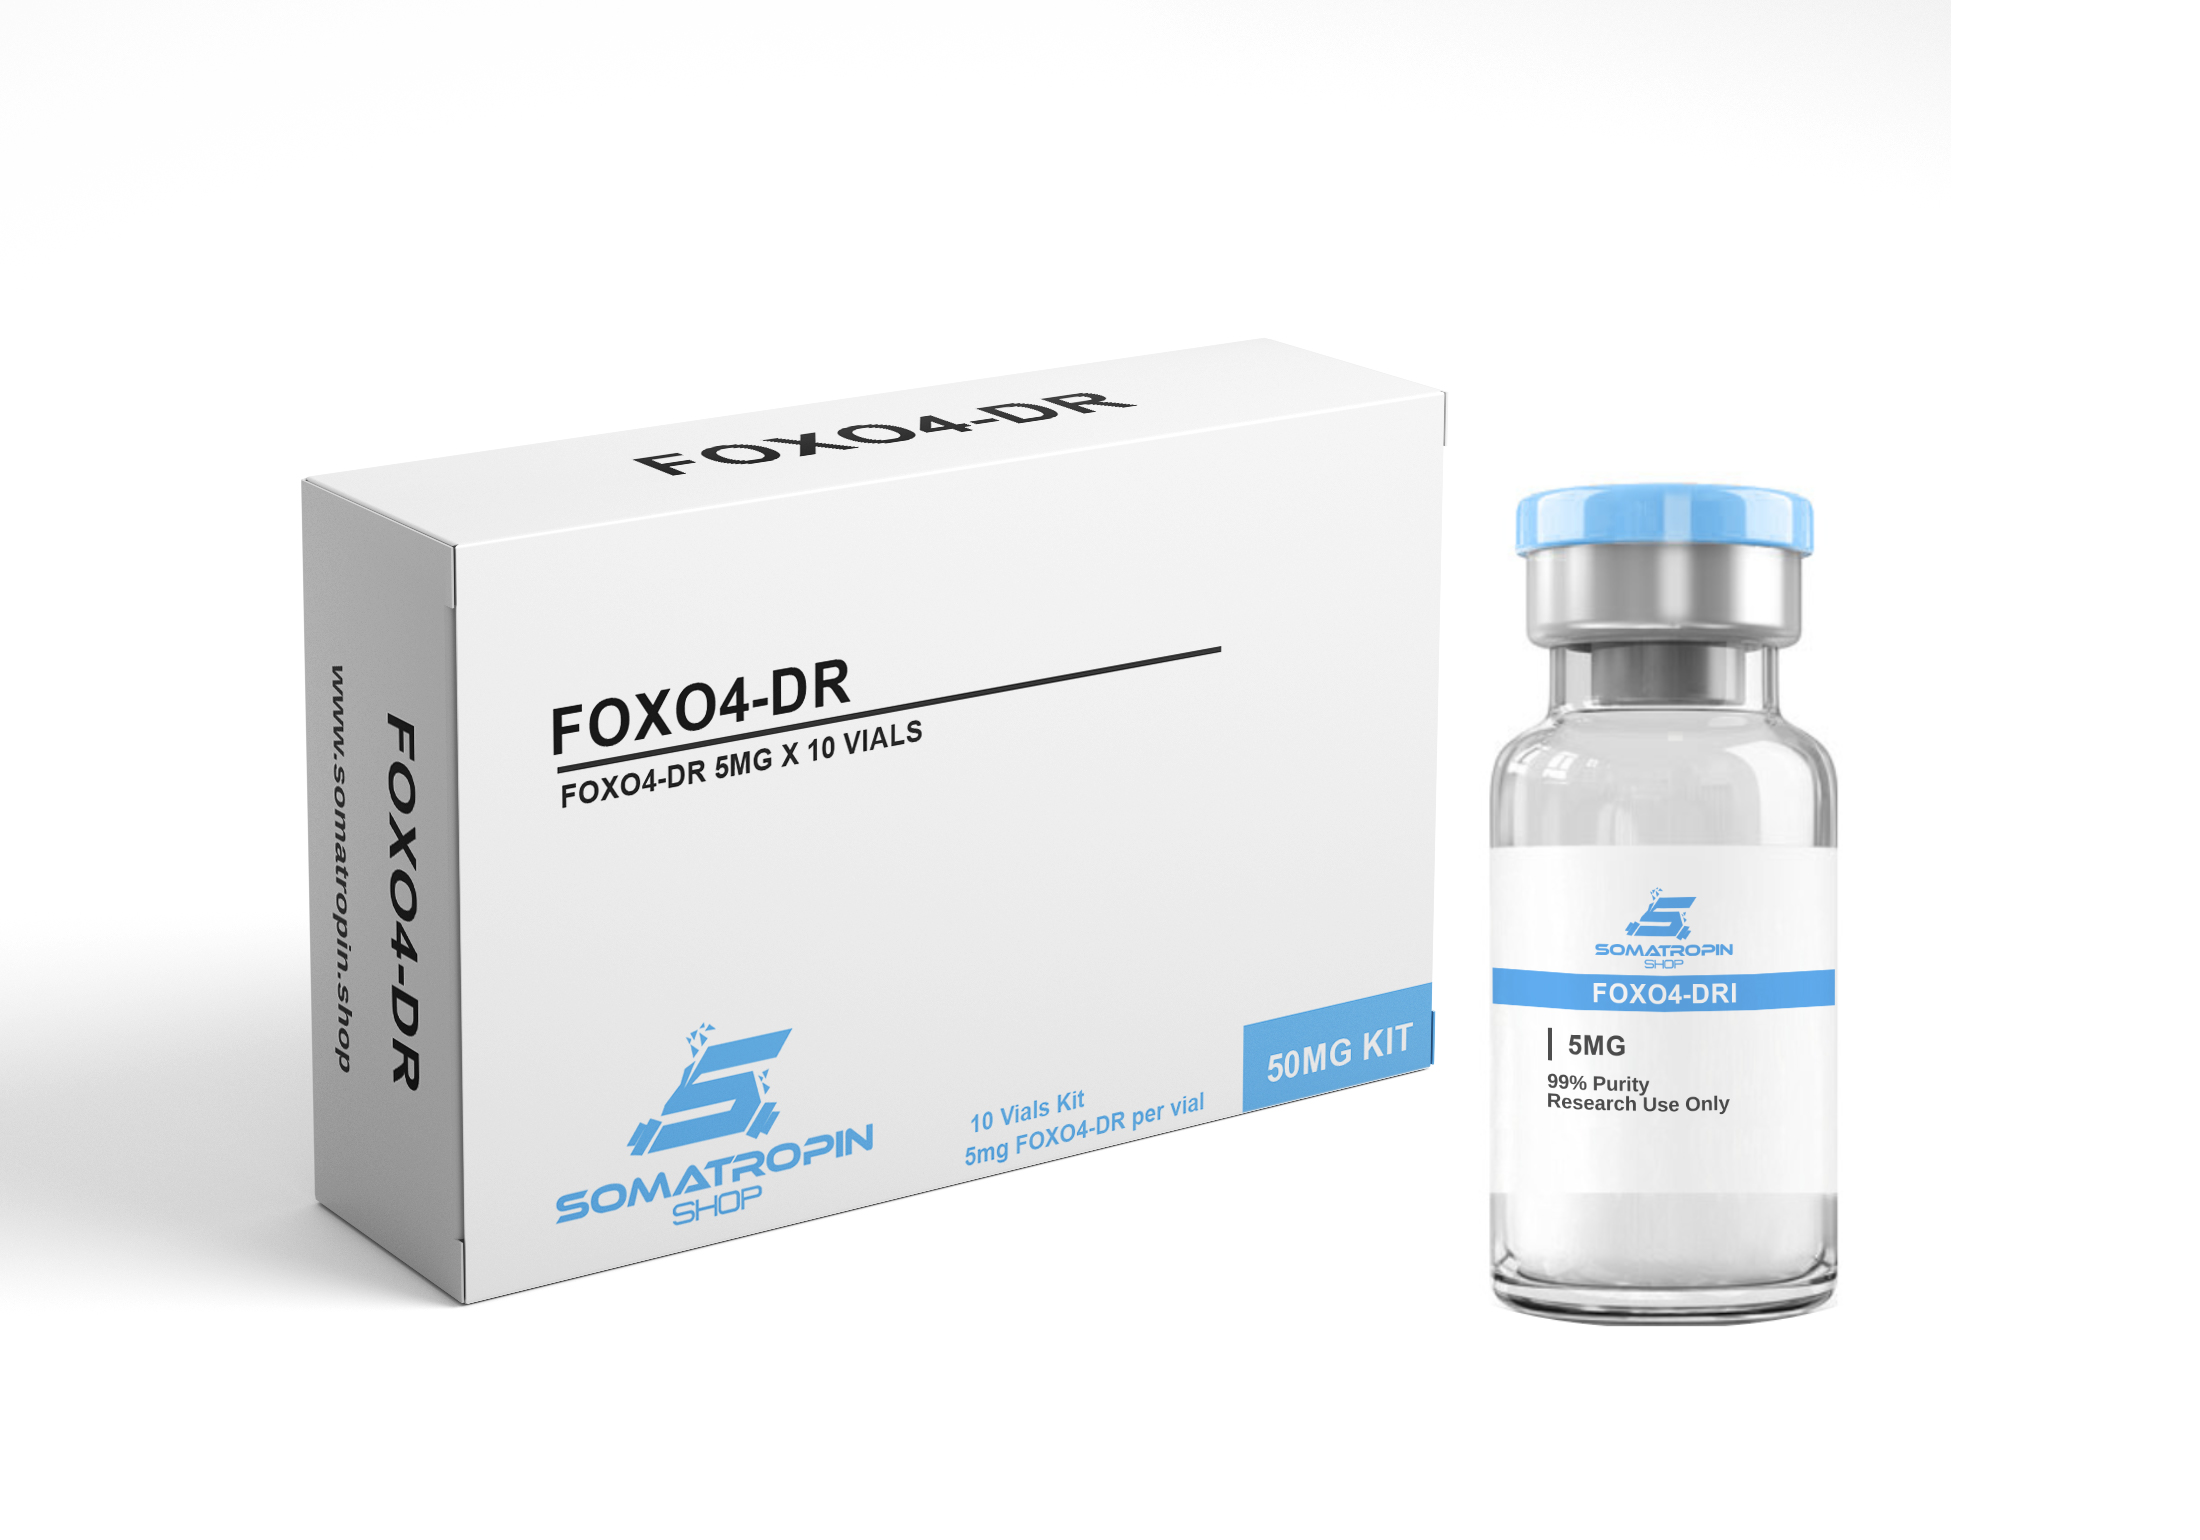 FOXO4-DRI, proxofim, peptide